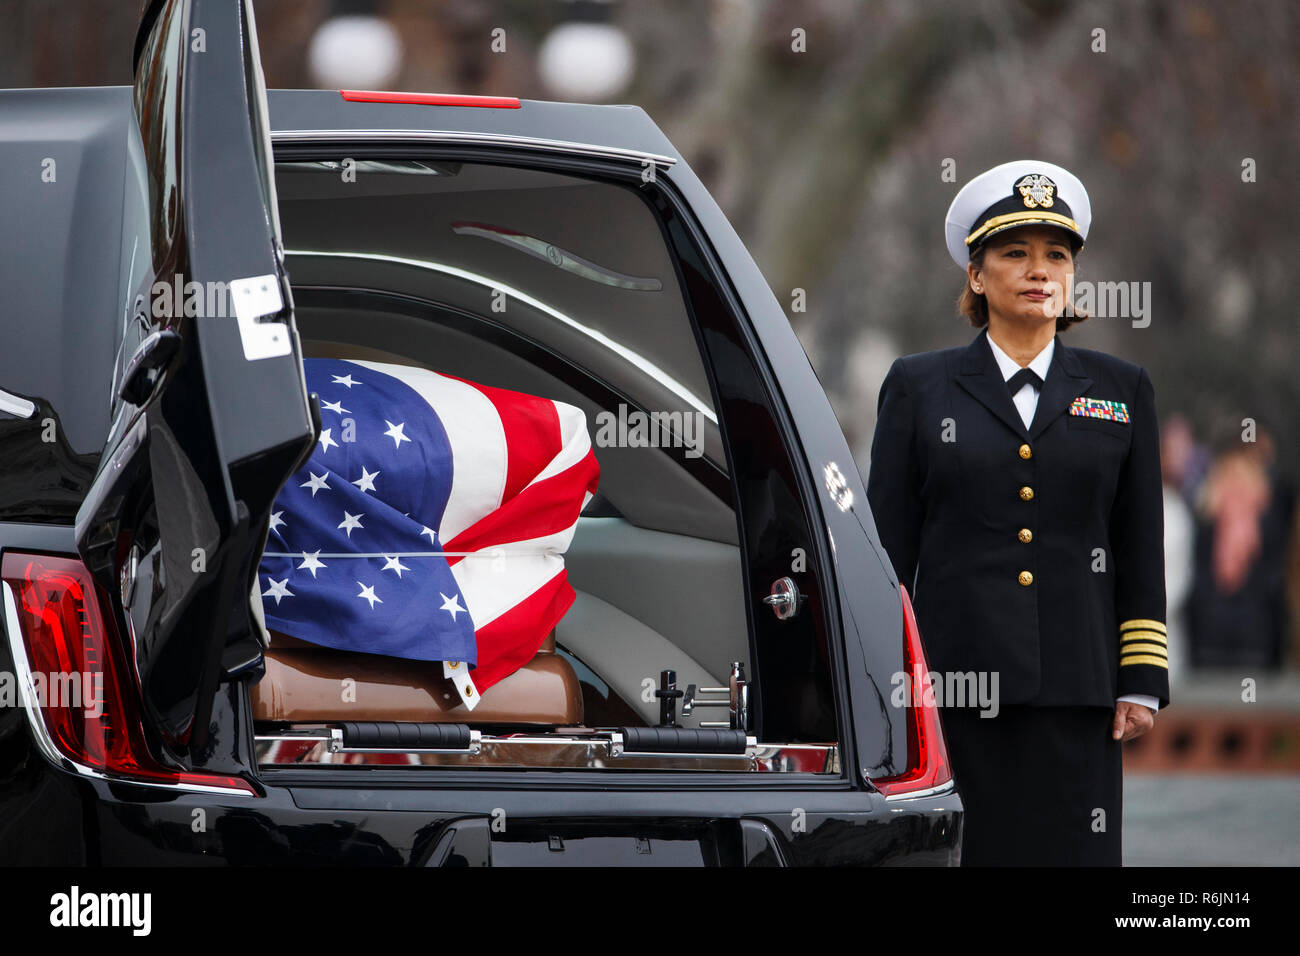 Die Schatulle des ehemaligen Präsidenten George H.W. Bush sitzt in einem leichenwagen vor dem U.S. Capitol, Mittwoch, Dezember 5, 2018, in Washington. Credit: Shawn Thew/Pool über CNP/MediaPunch Stockfoto